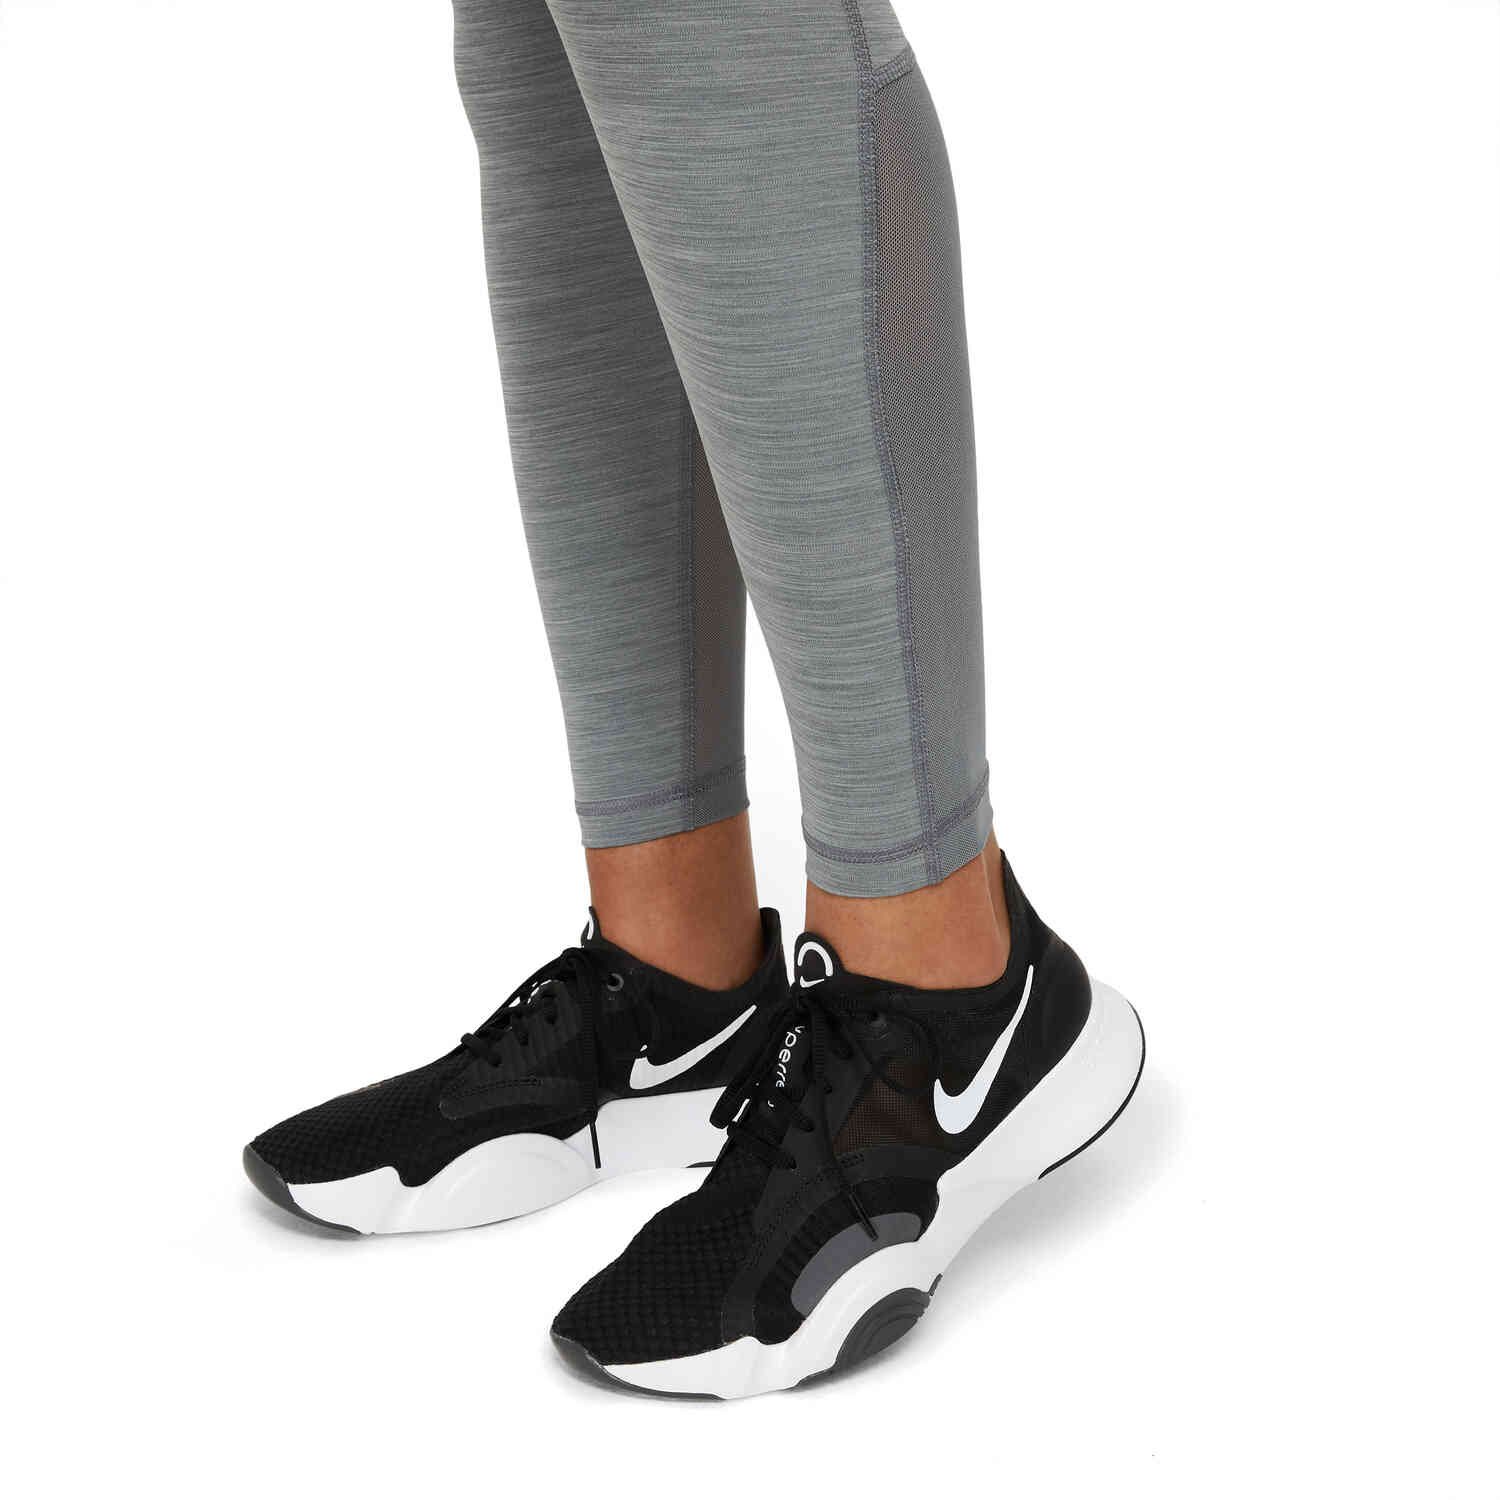 Womens Nike Pro 365 Tights - Smoke Grey/Htr/Black/White - SoccerPro